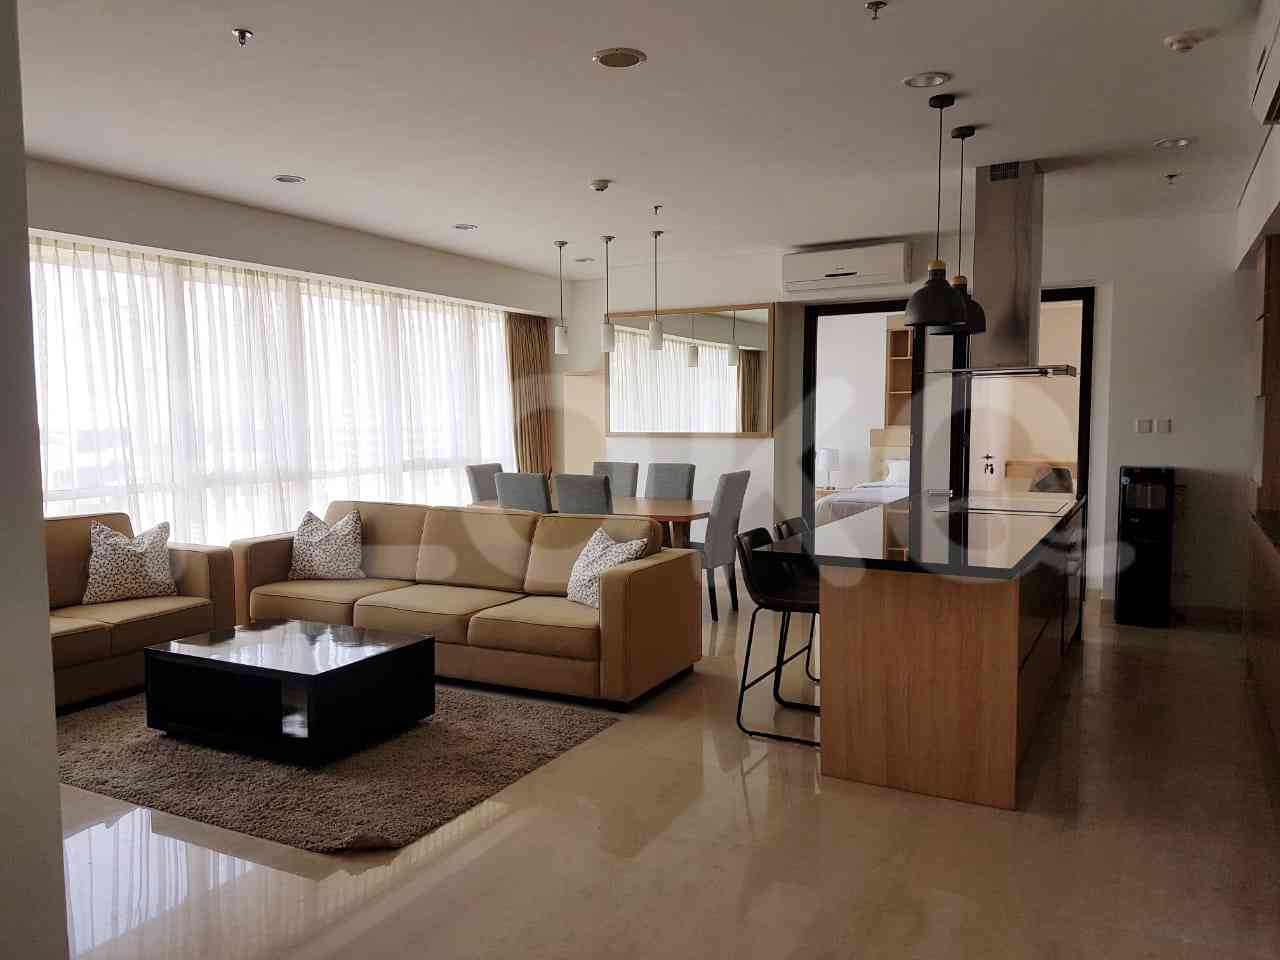 3 Bedroom on 38th Floor for Rent in Sky Garden - fse7b4 1